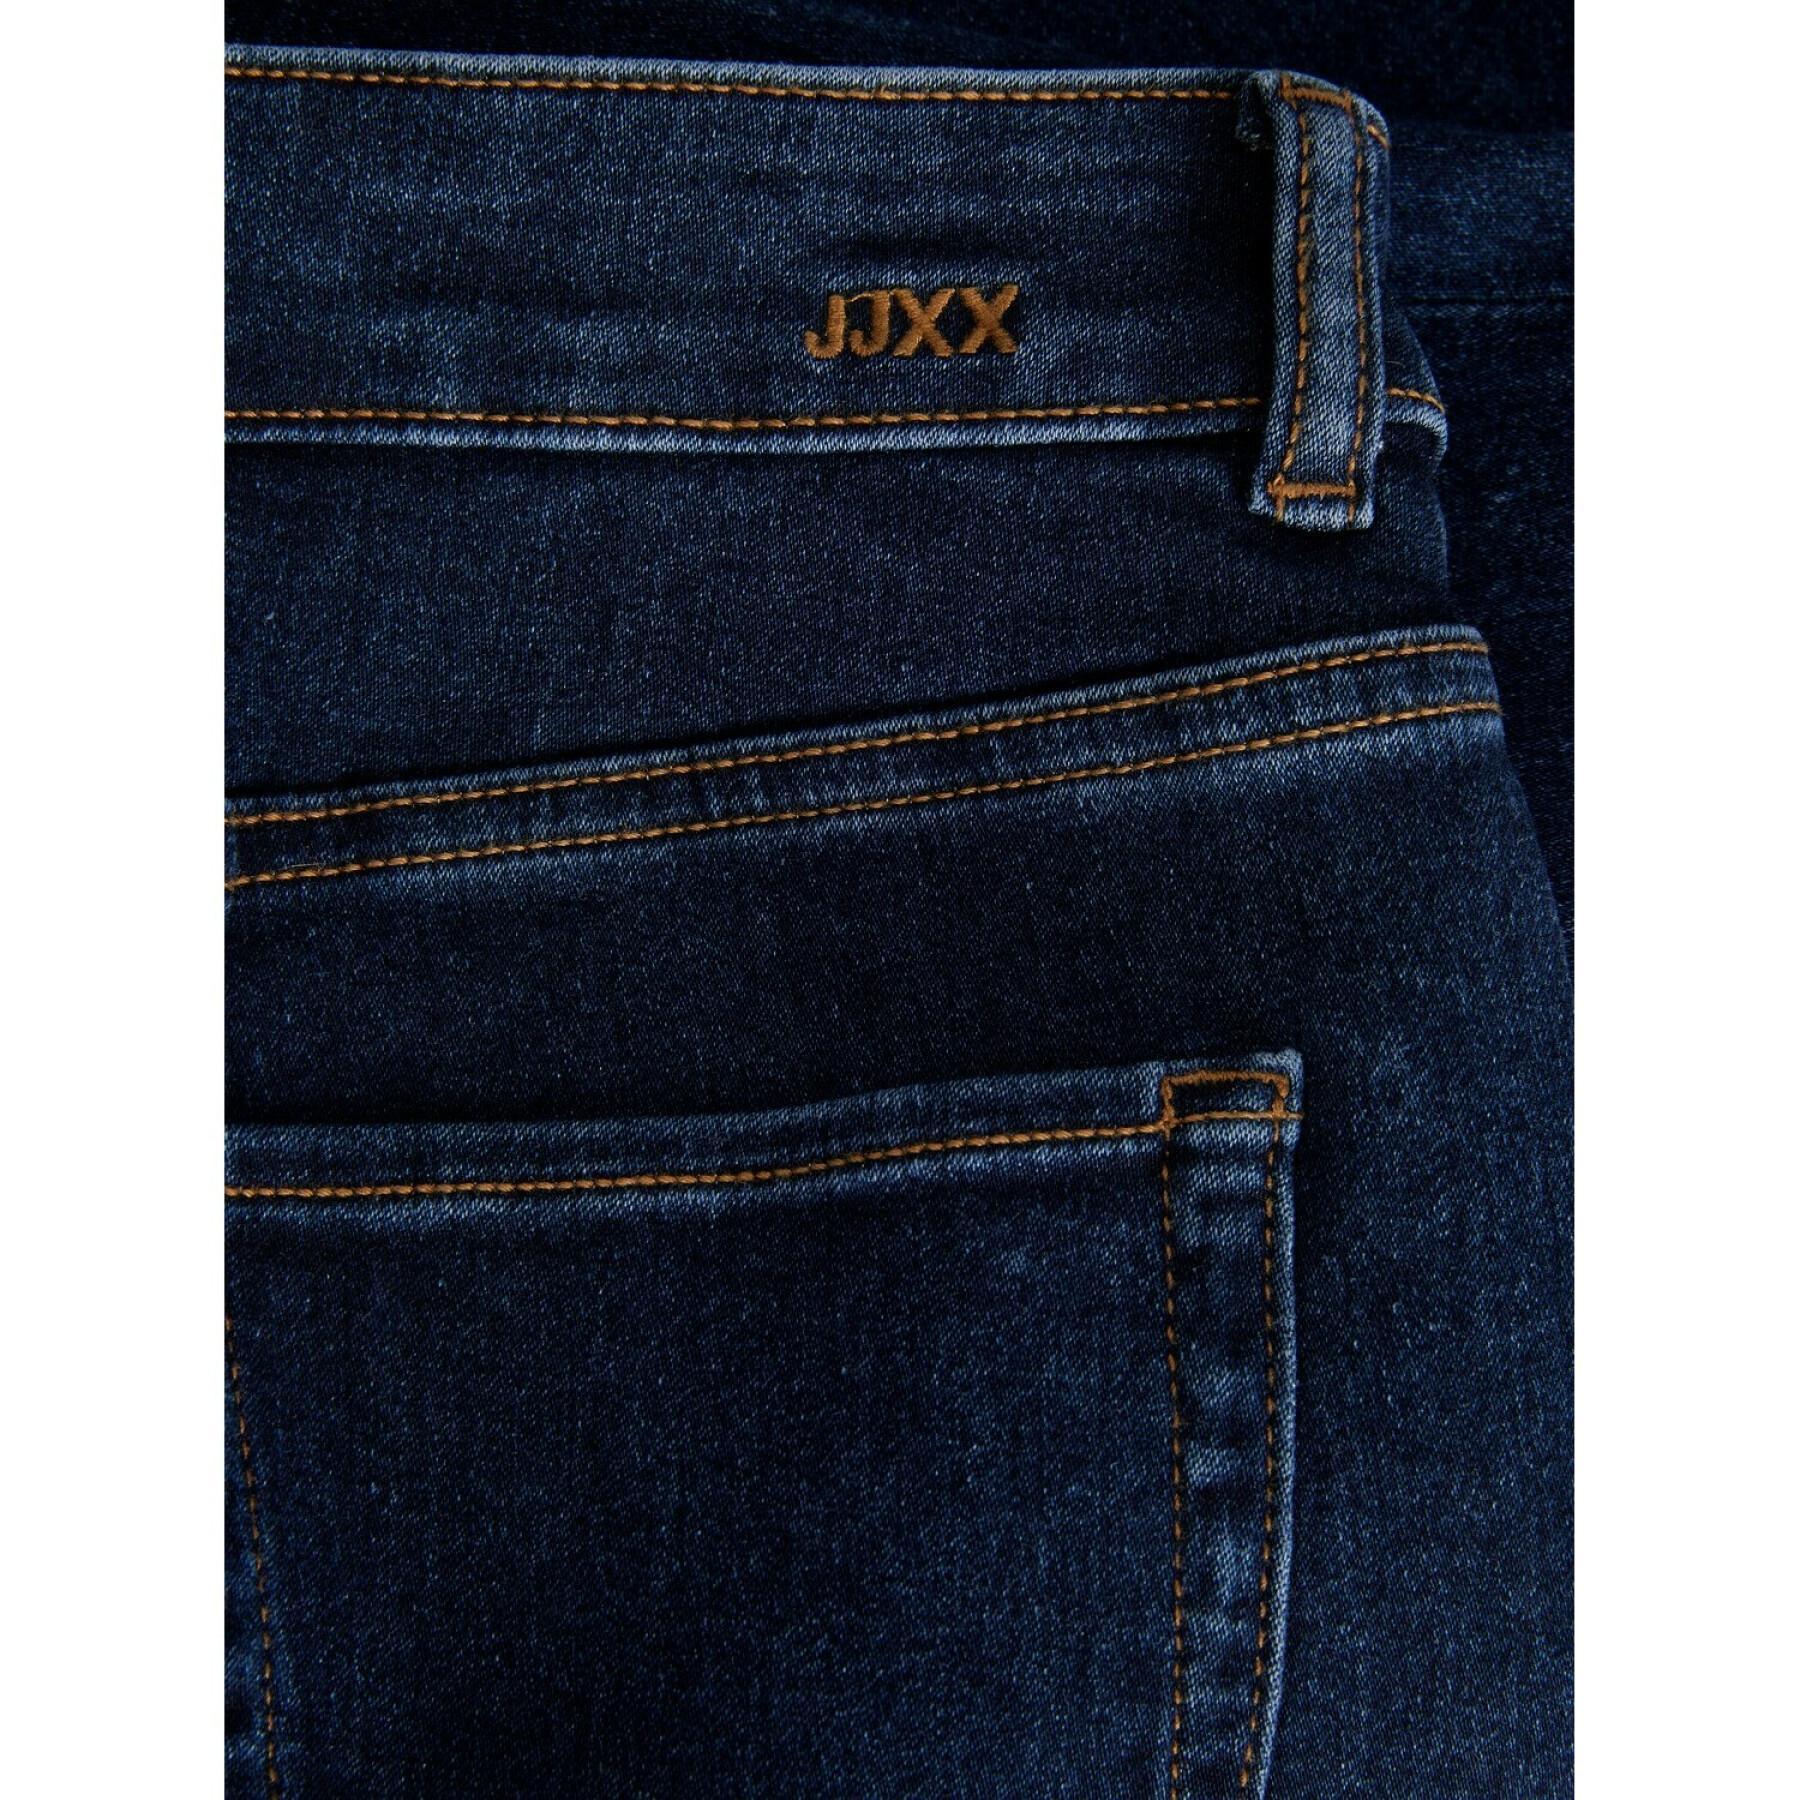 Jeans JJXX vienna skinny ns1002